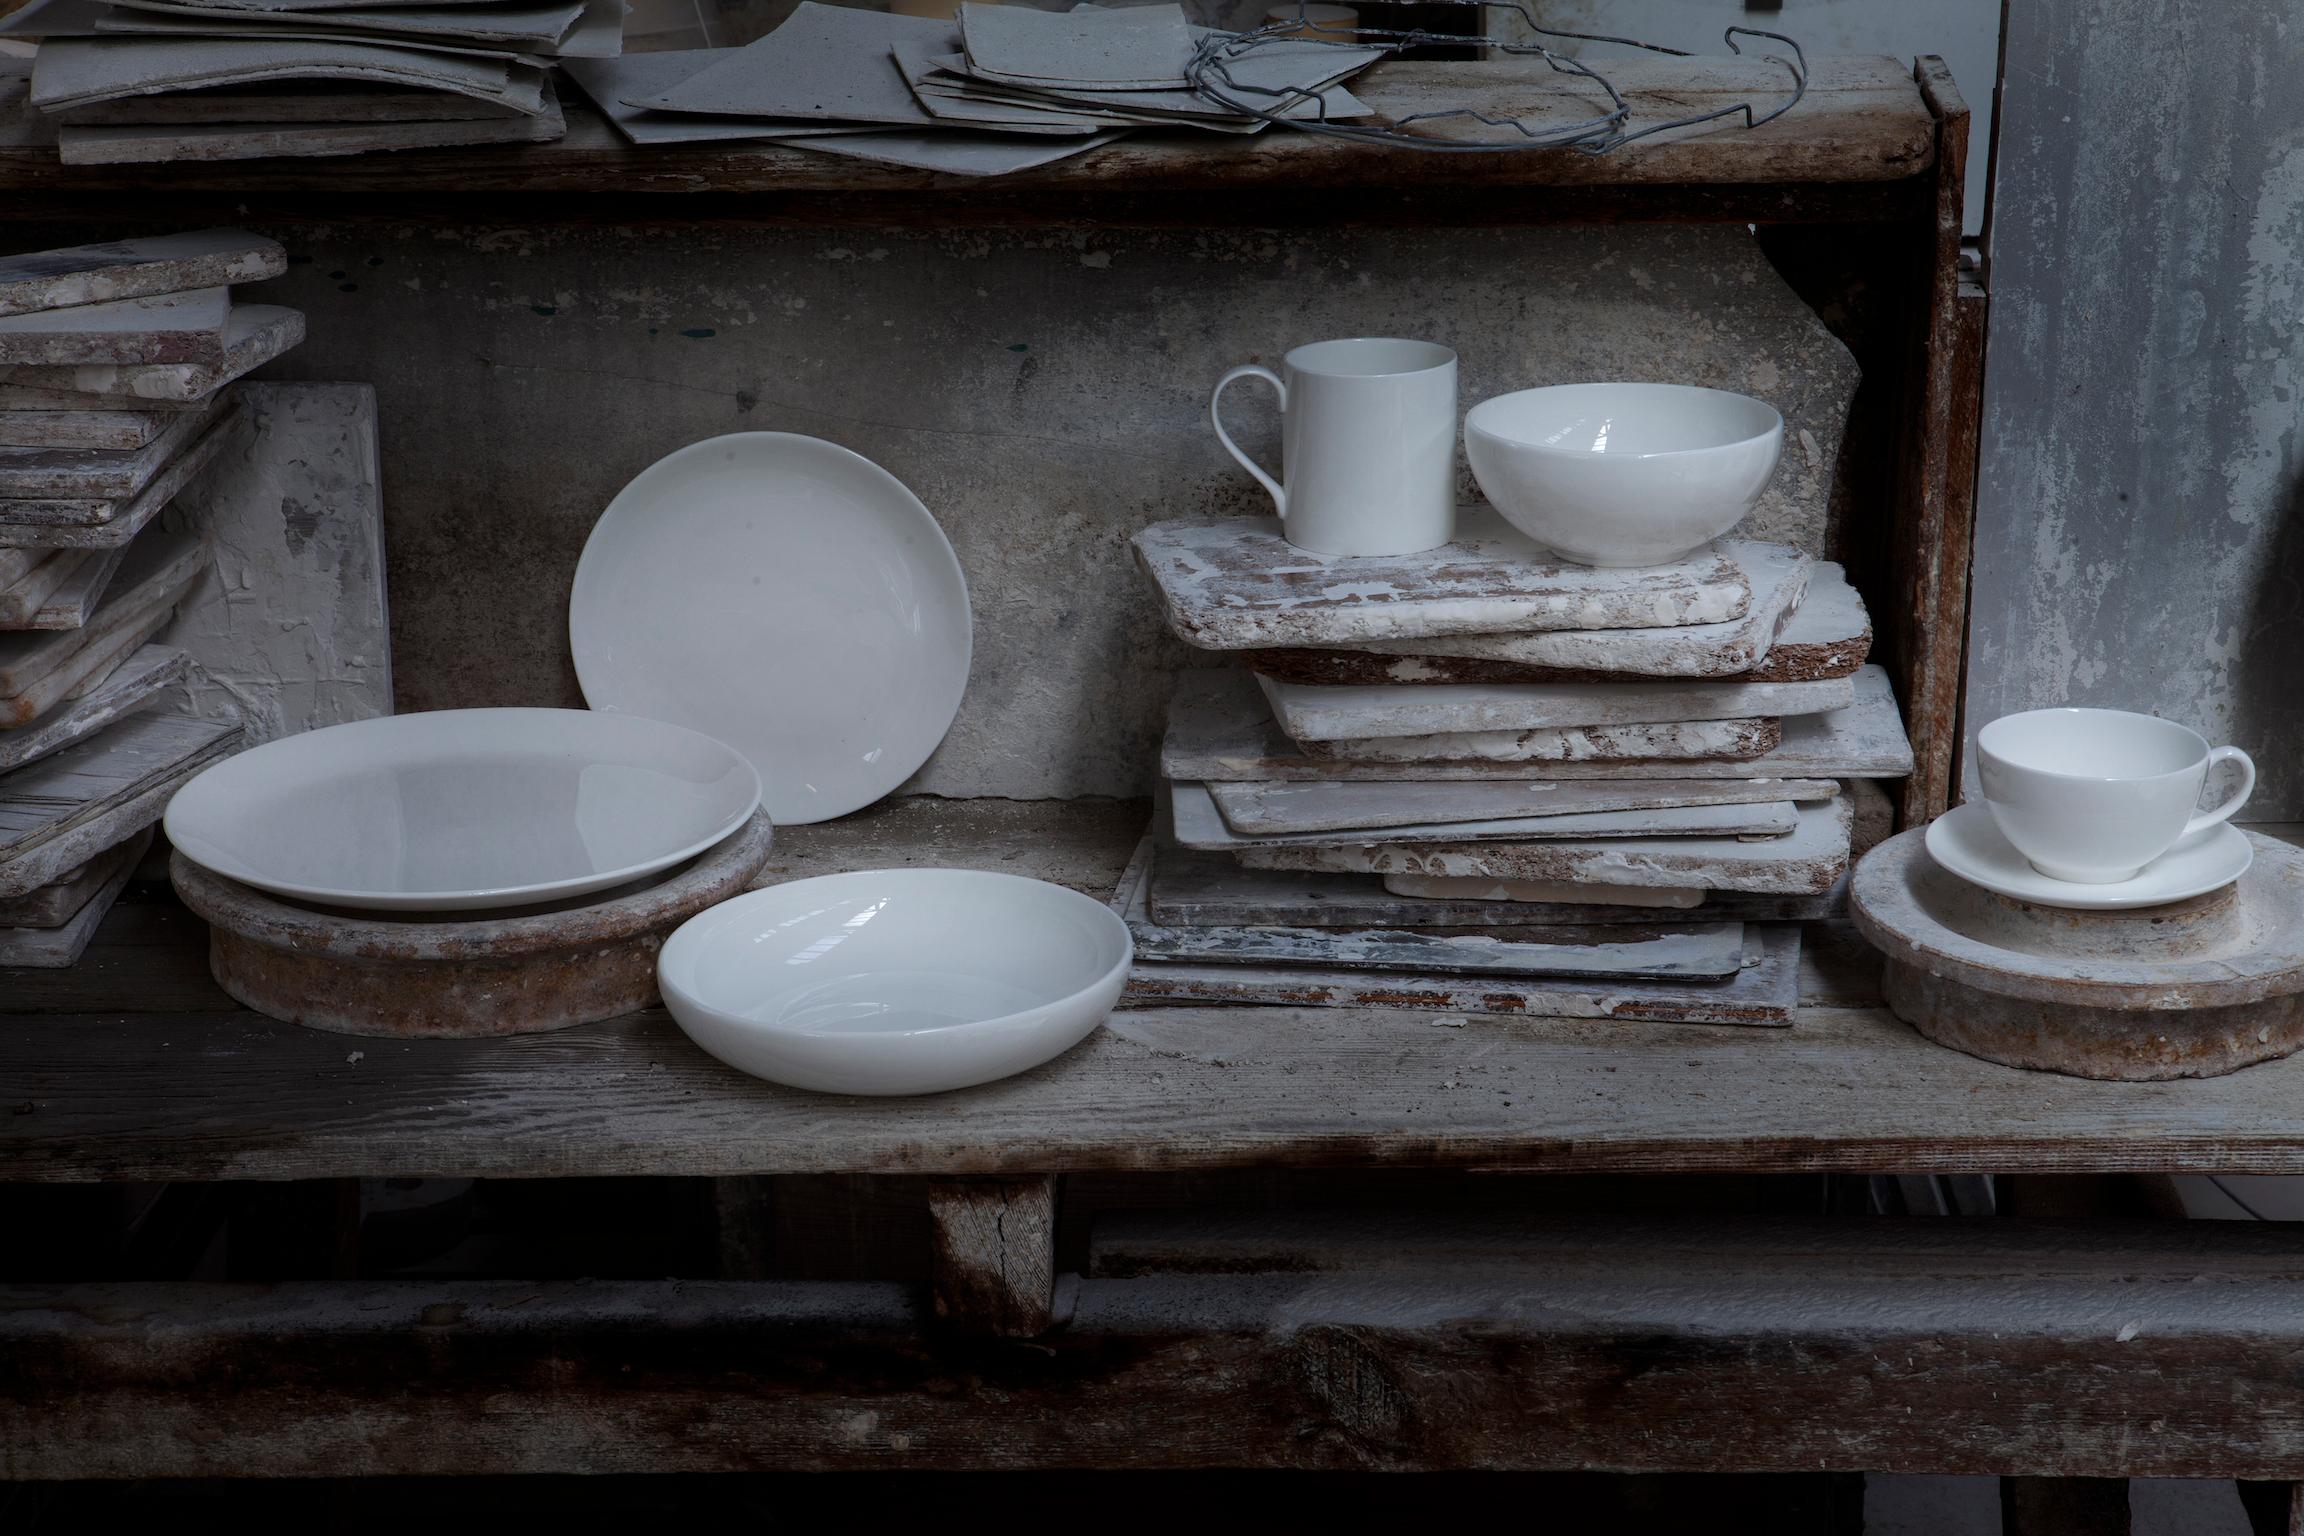 White, 1882 Ltd. La vaisselle en porcelaine fine d'os puriste. Conçu par Chris Johnson et fabriqué à Stoke-on-Trent. Elle constitue la base de toutes nos collections et la plus merveilleuse des fondations pour toute table.
 